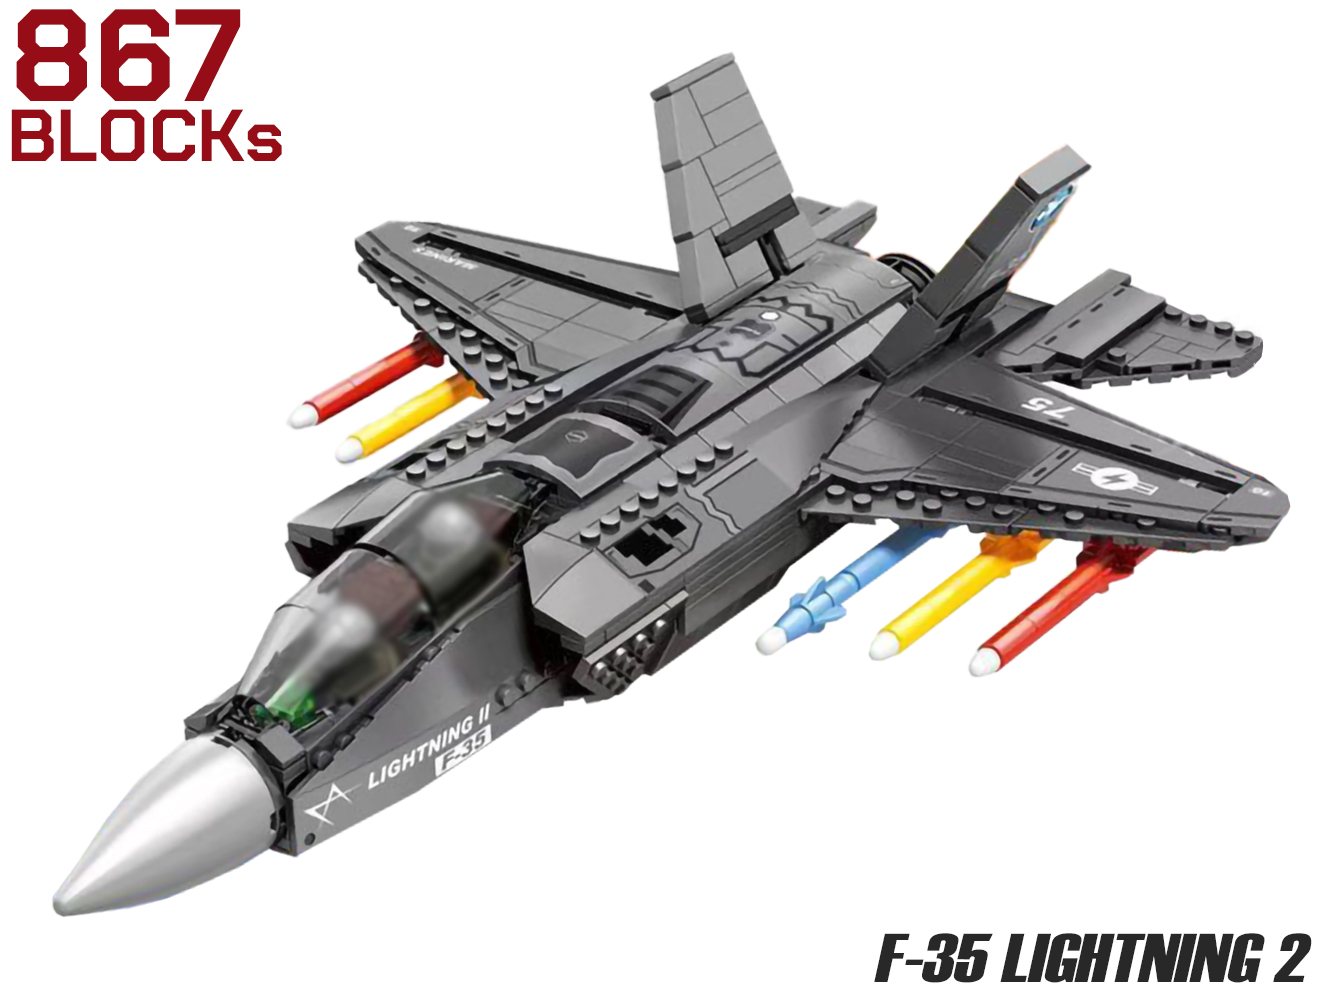 AFM F-35 ライトニング2 867Blocks◆ブロック 知育玩具 プレゼント 子供 お子様 おもちゃ 組み立て インテリア ステルス 能力 動く リアル ミリタリー 戦闘機